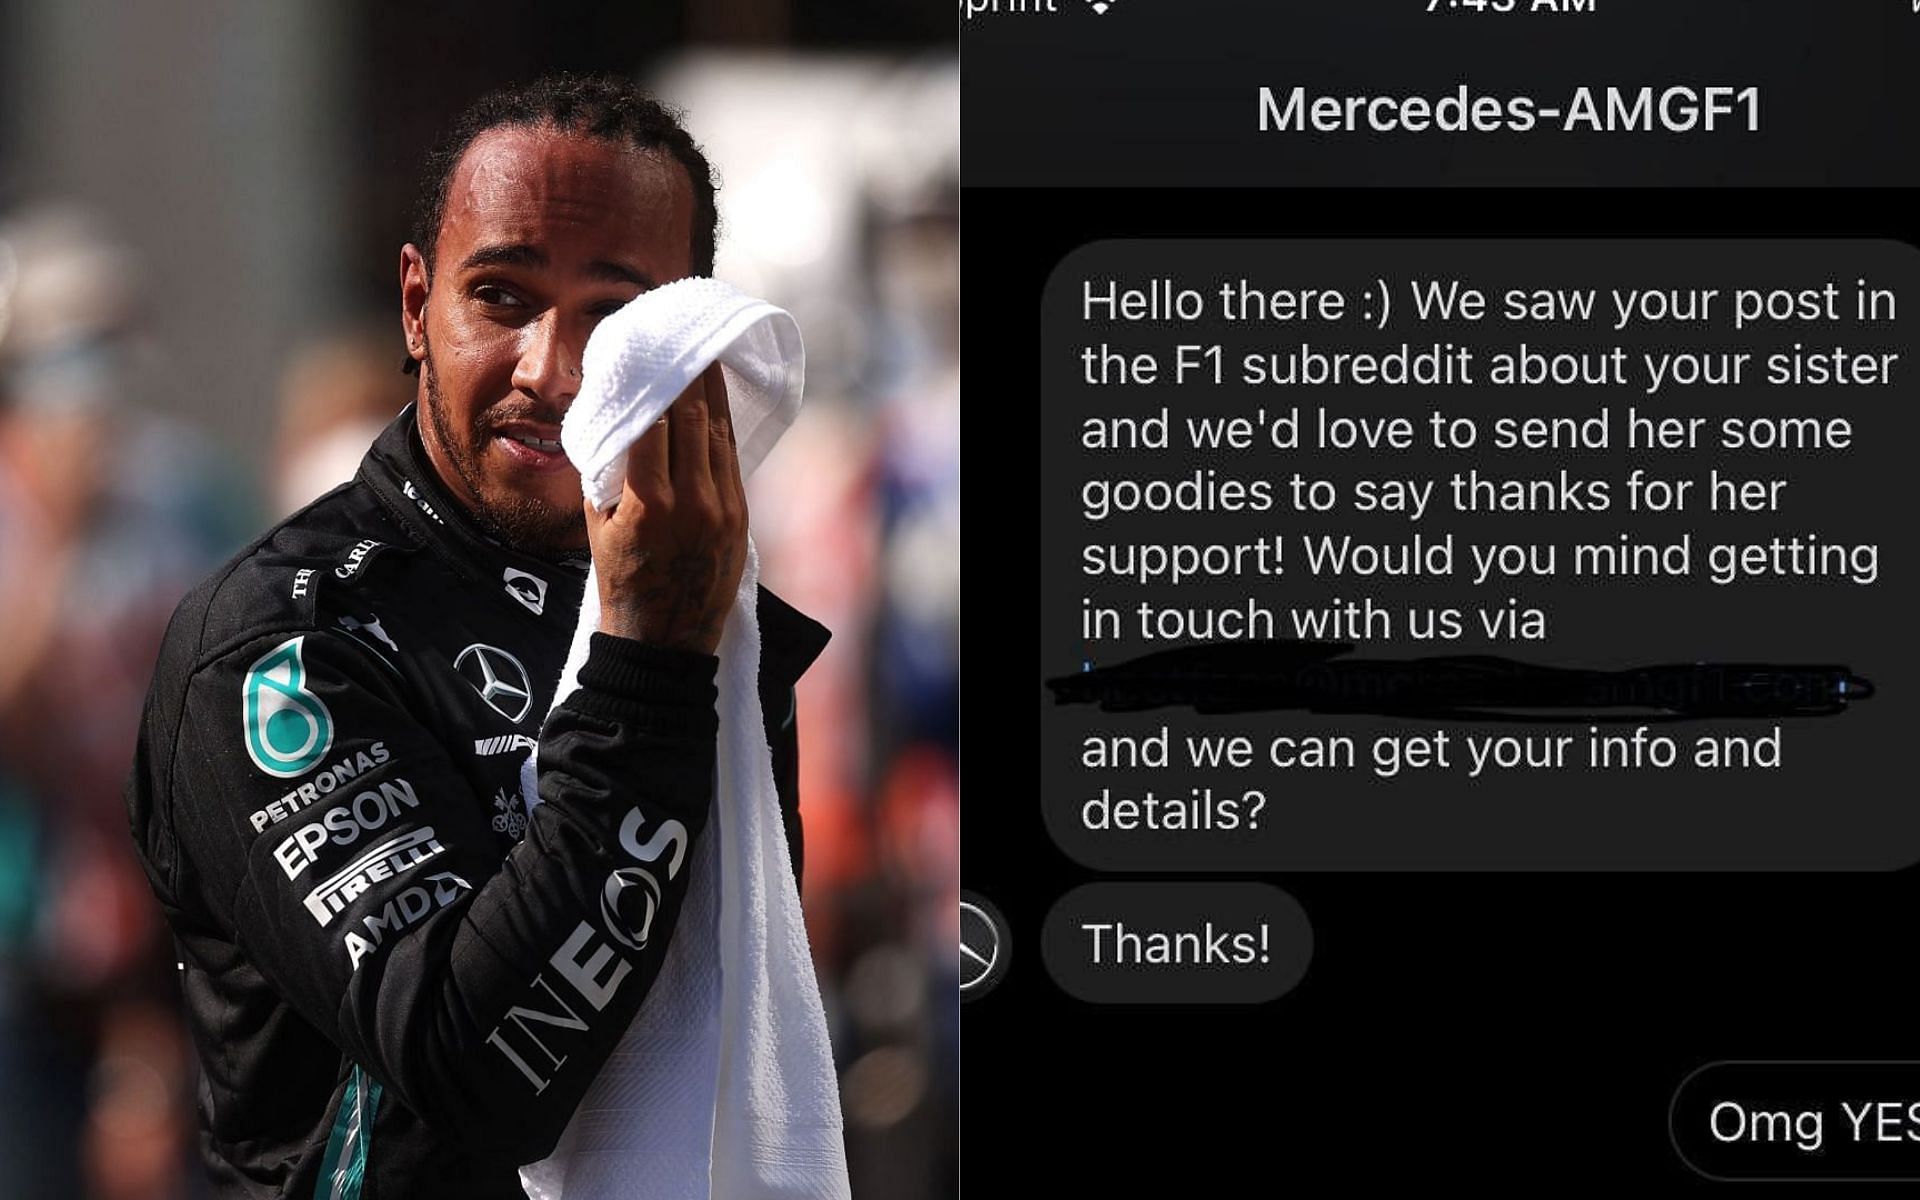 Mercedes responds to Reddit user&#039;s heart-warming story. [Screenshot via Reddit user u/blender_defender]